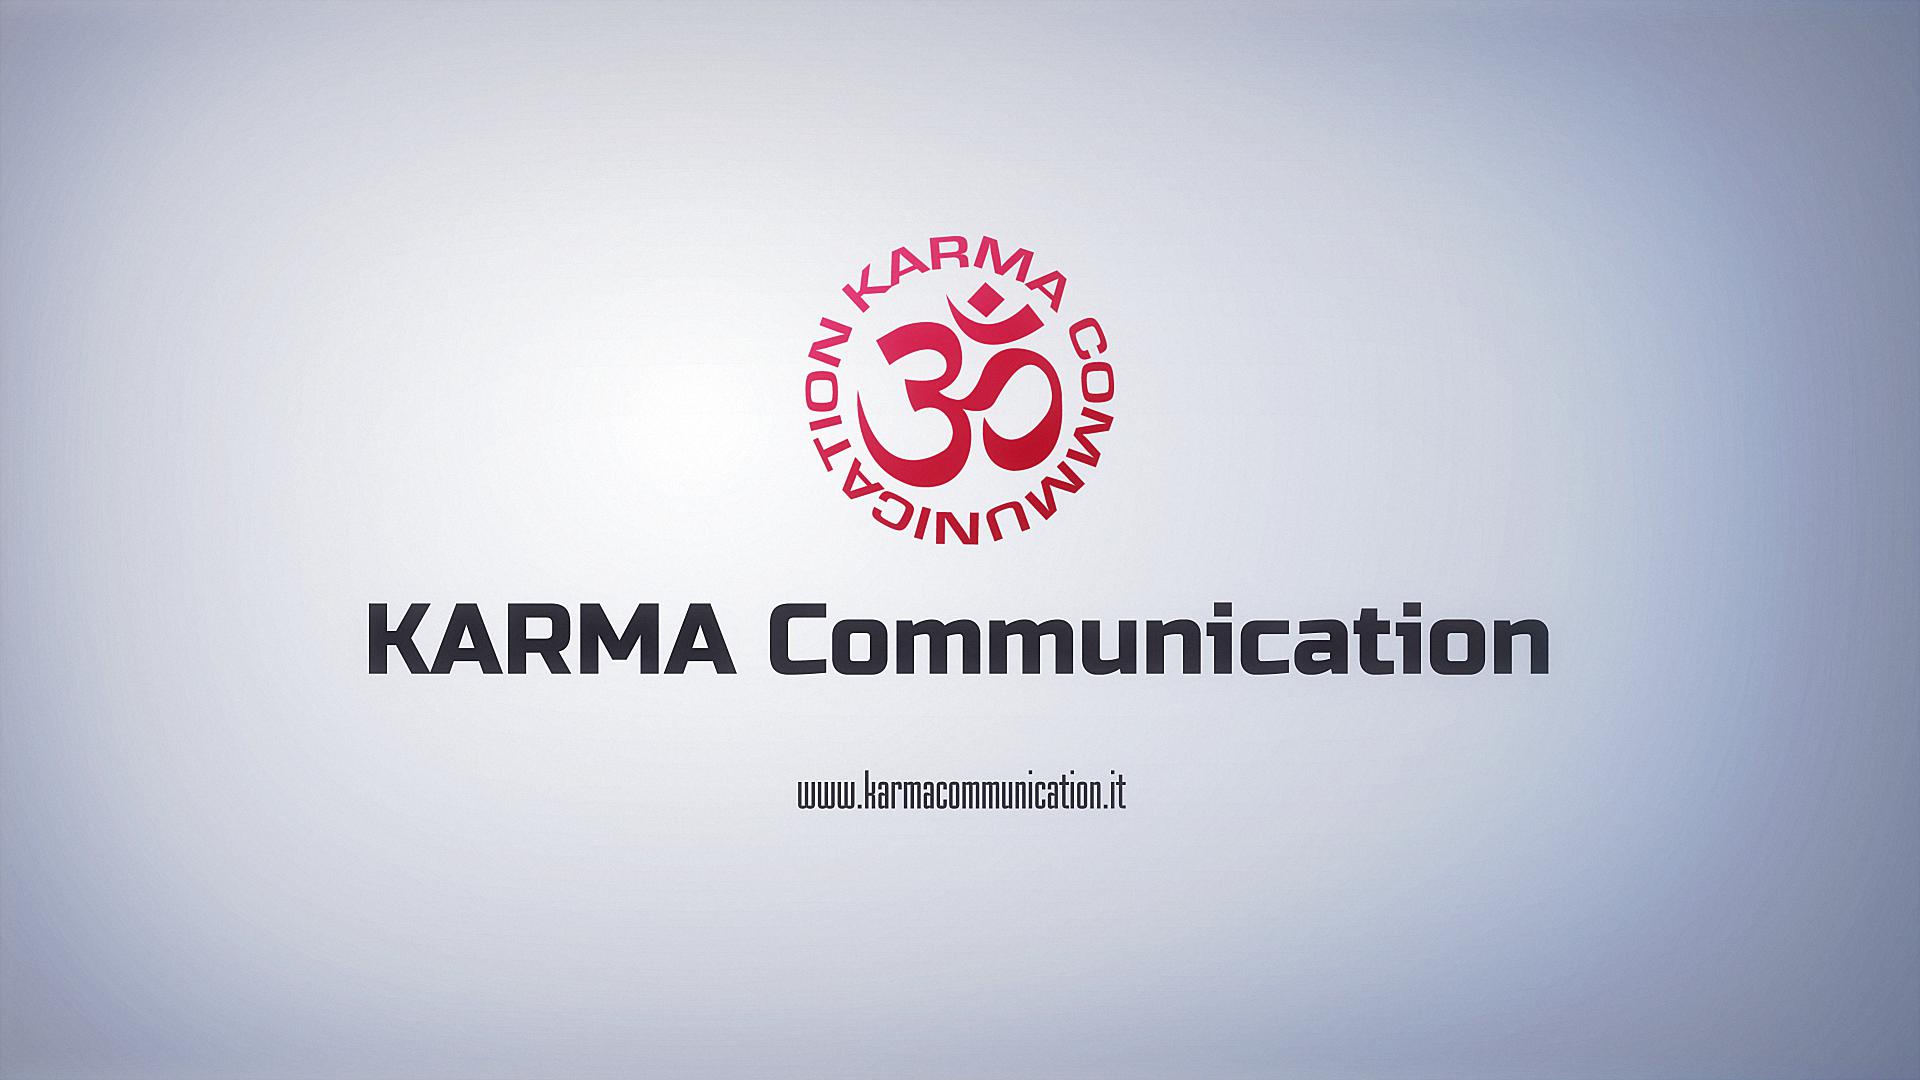 (c) Karmacommunication.it